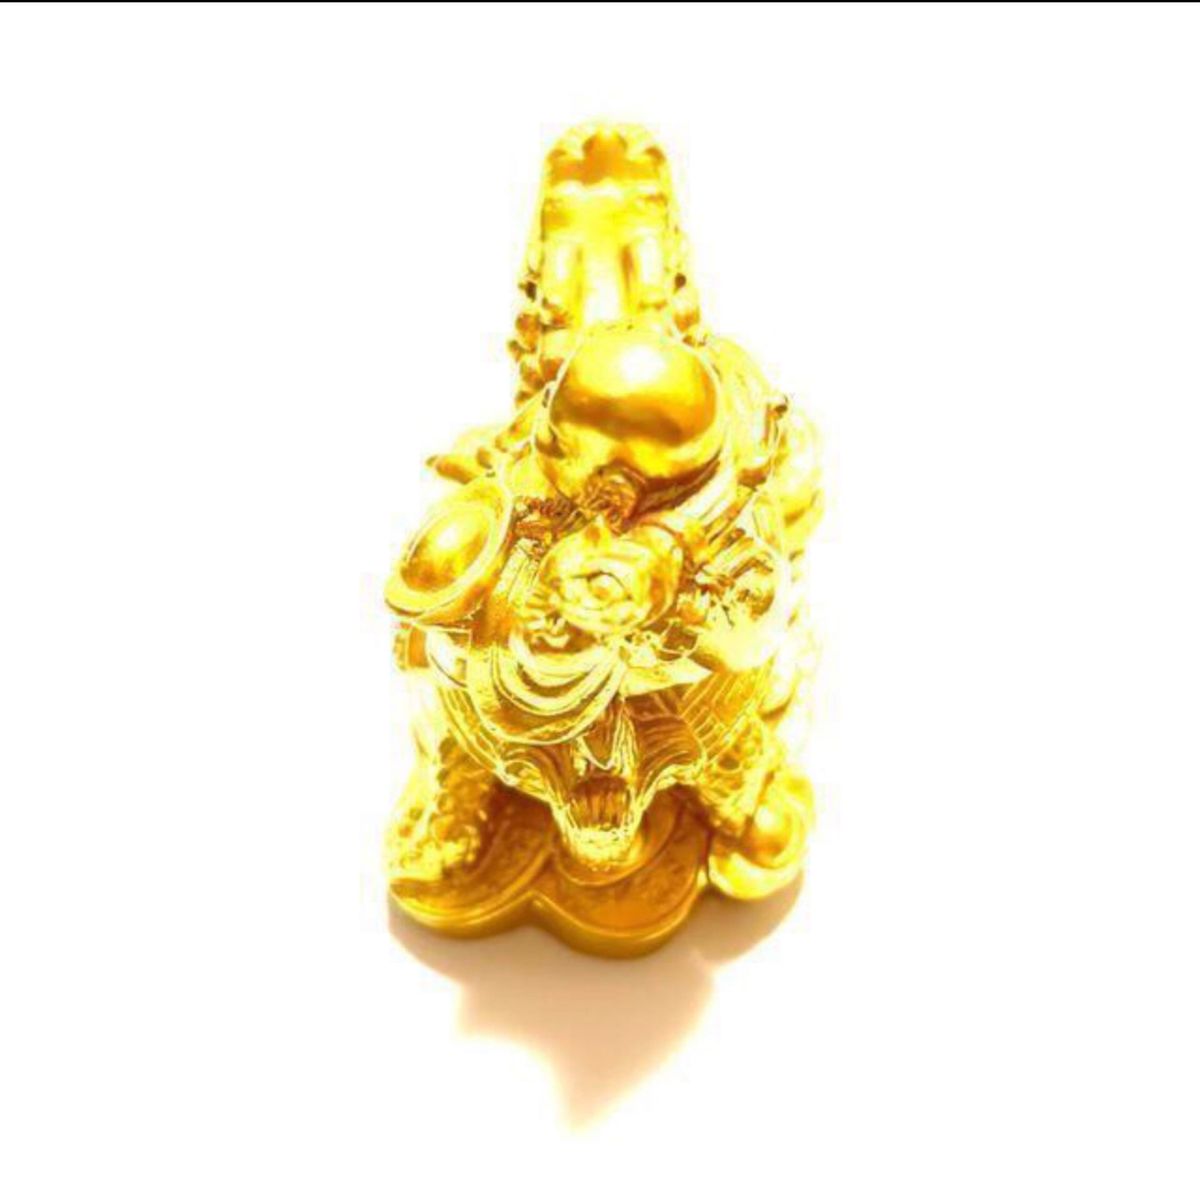 布袋さん 置物 七福神 オブジェ インテリア 龍亀に座っている布袋 弥勒菩薩 仏像 開運 金運アップ 風水グッズ ゴールド